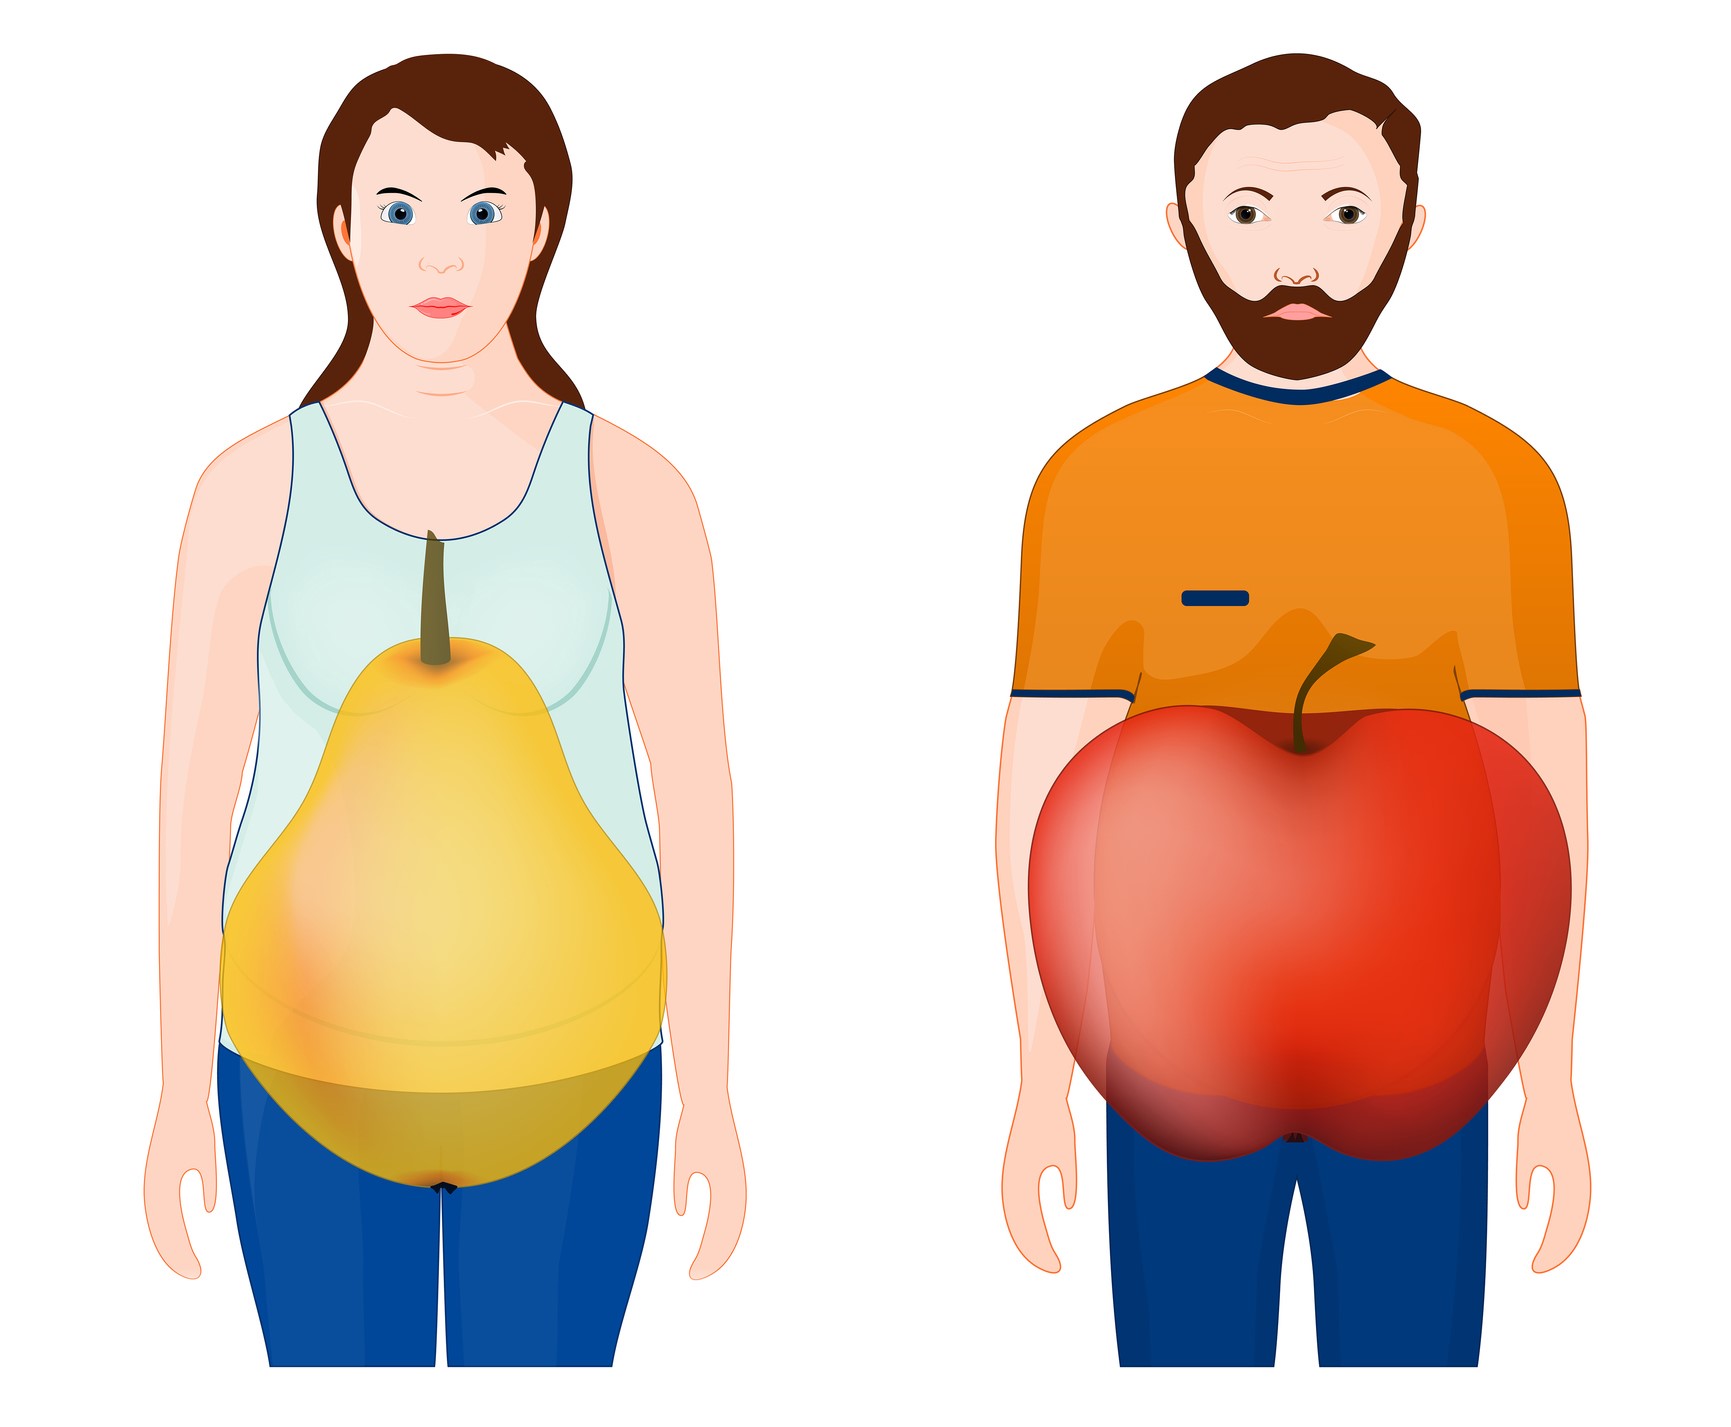 Animirana slika prikazuje oblik tela - žena, kruška, muškarac, jabuka